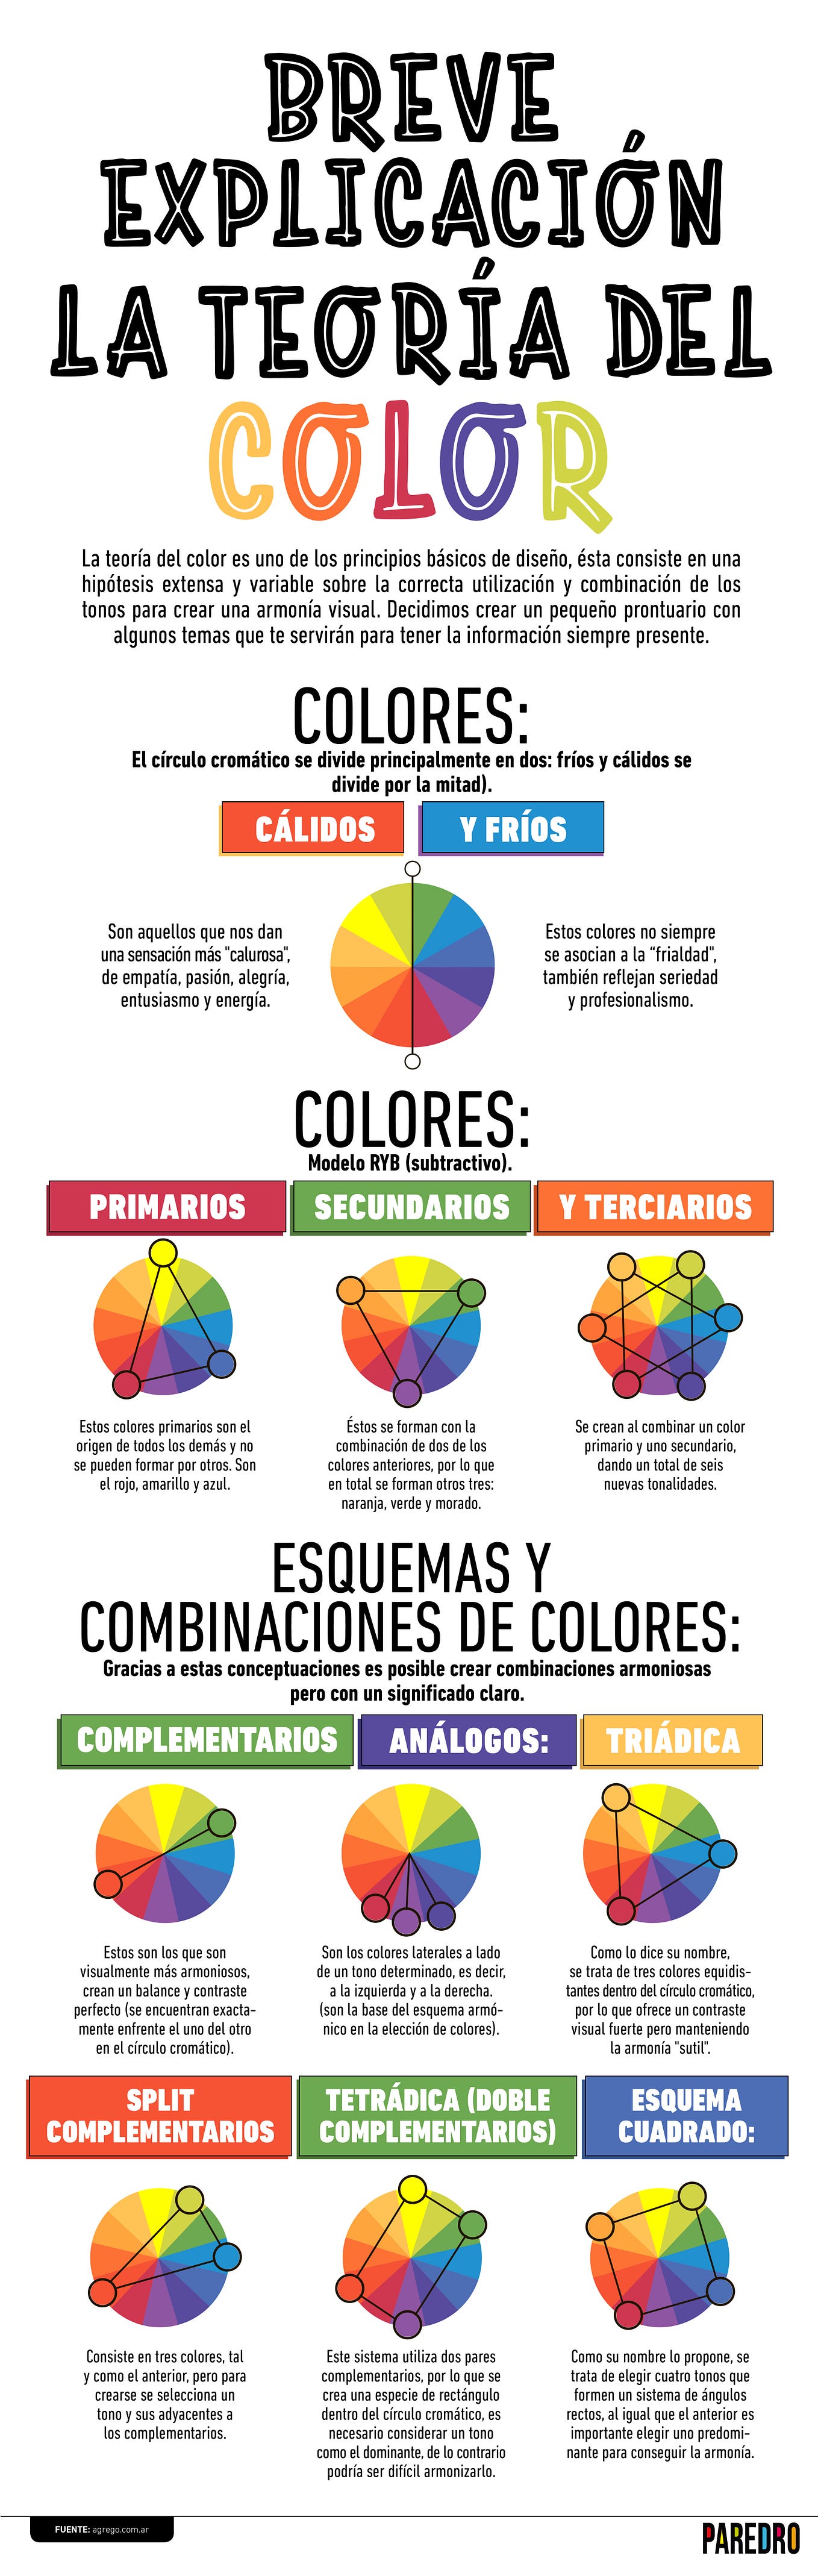 Infografía: Breve explicación de la teoría de color